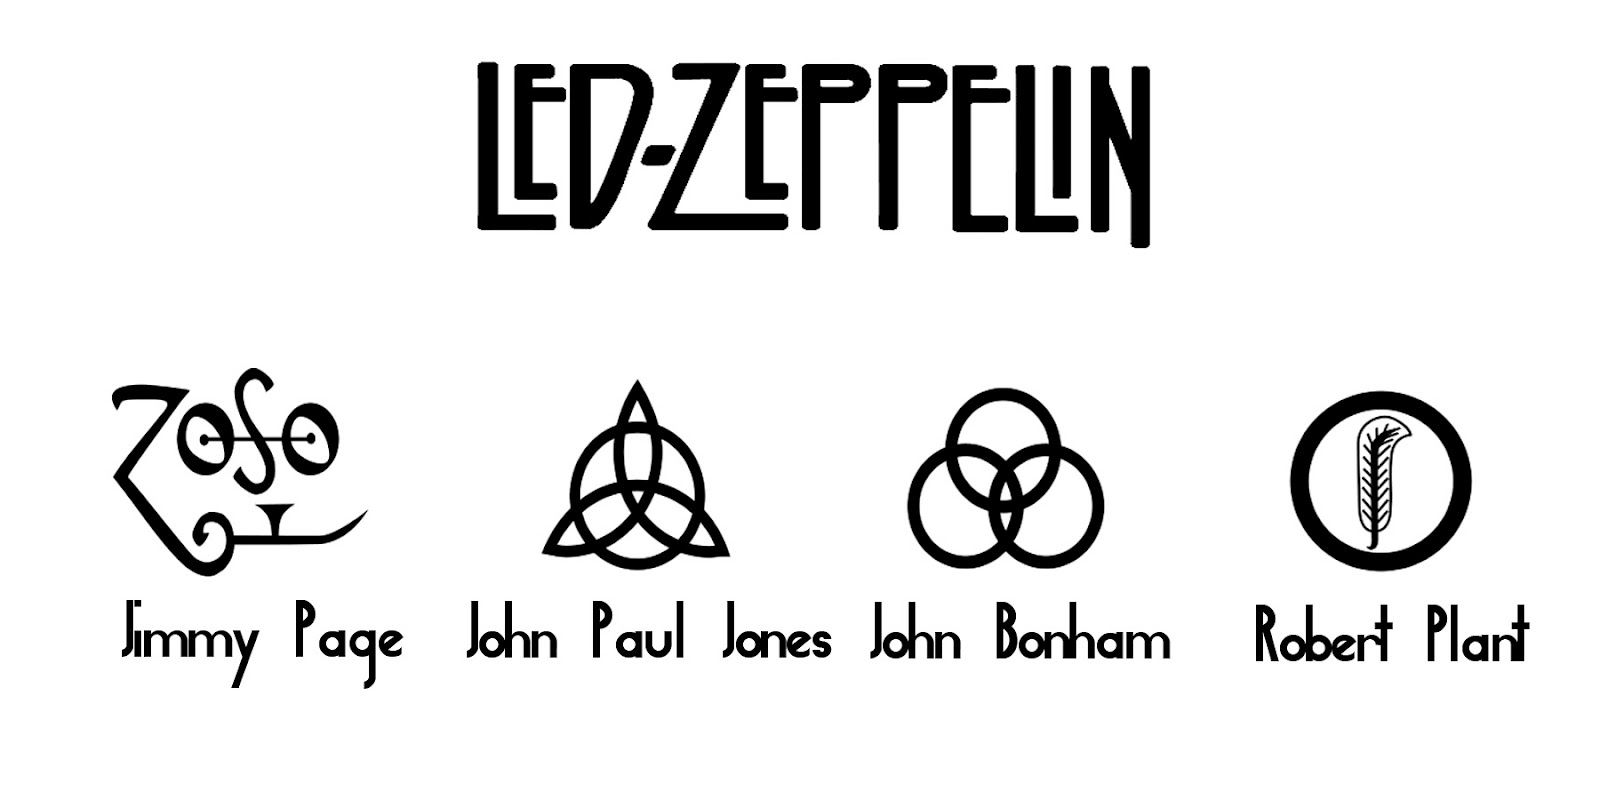 Led Zeppelin fan Nayip Puente-N